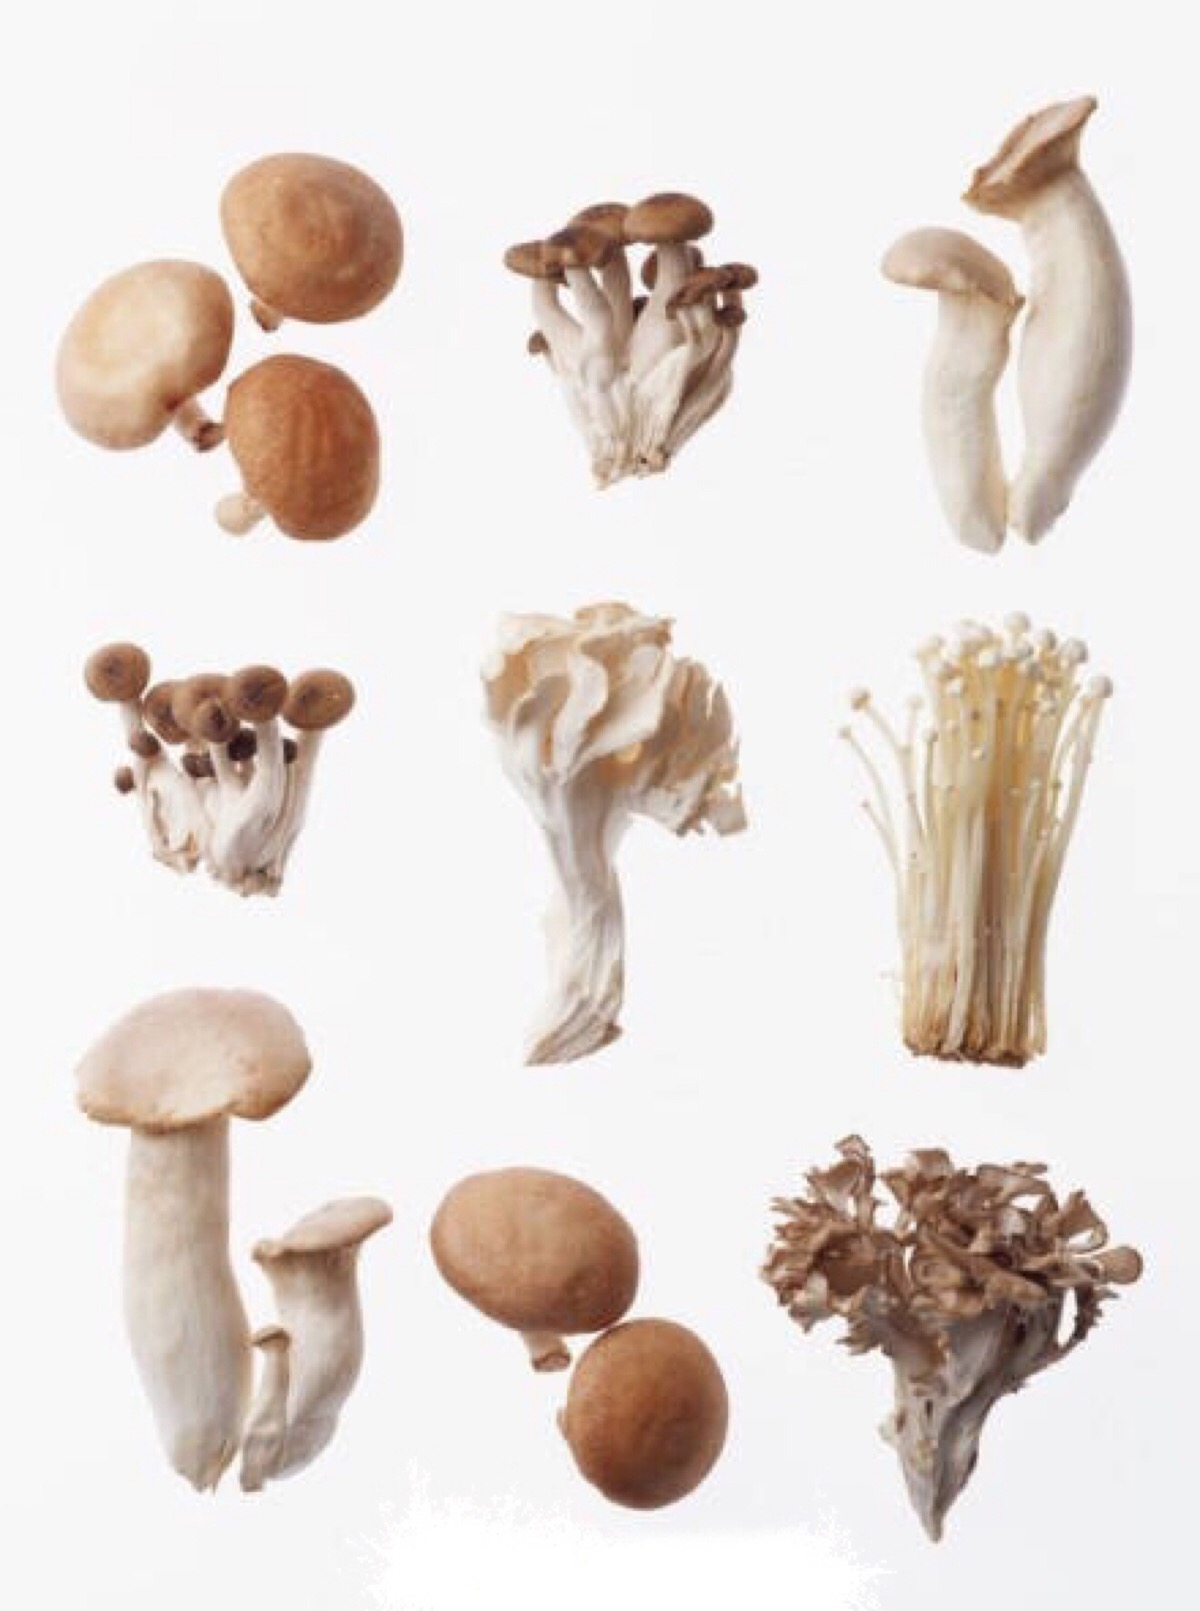 【七种菌类功效】⒈蘑菇:抗肺癌,皮肤癌;⒉香菇:降压抗癌,滋养皮肤